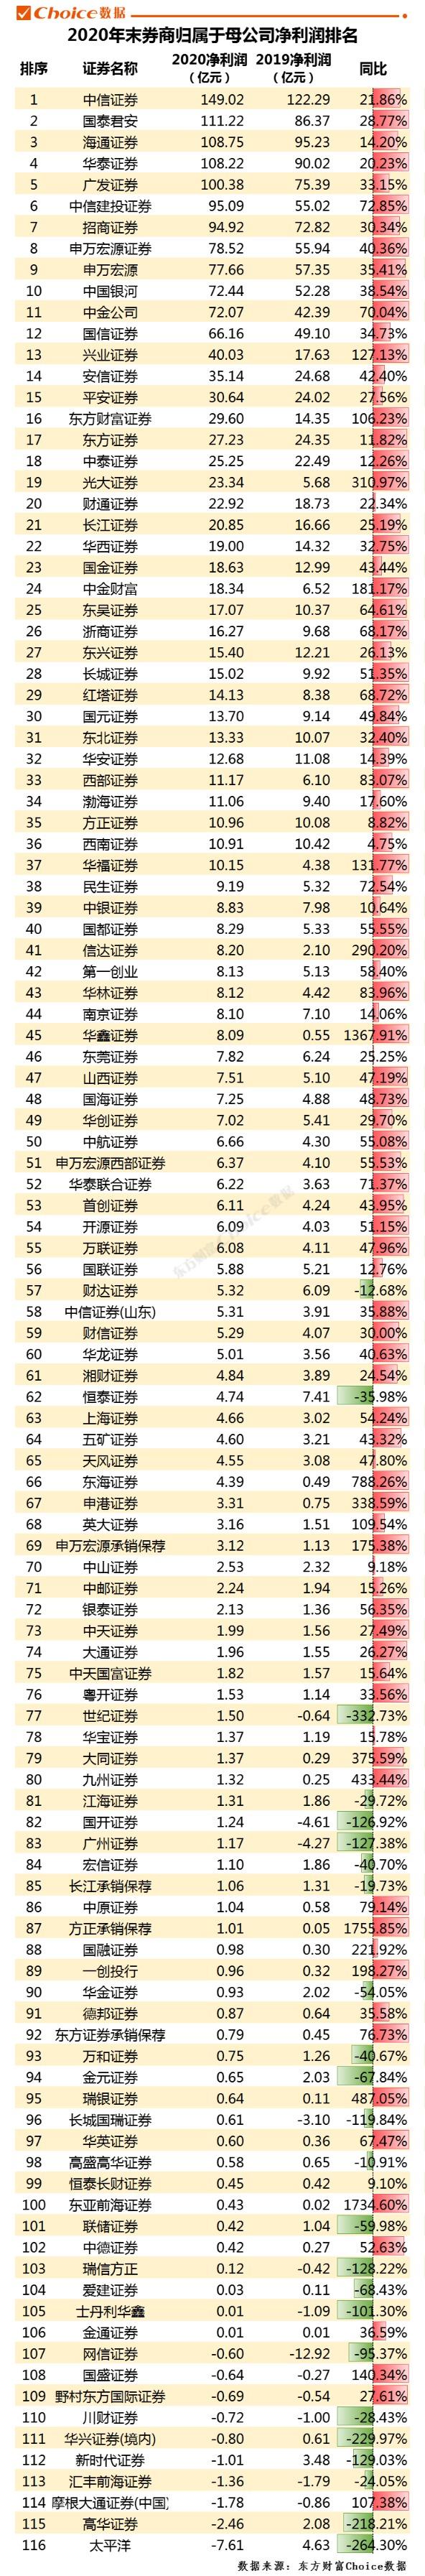 中国券商排名的相关图片